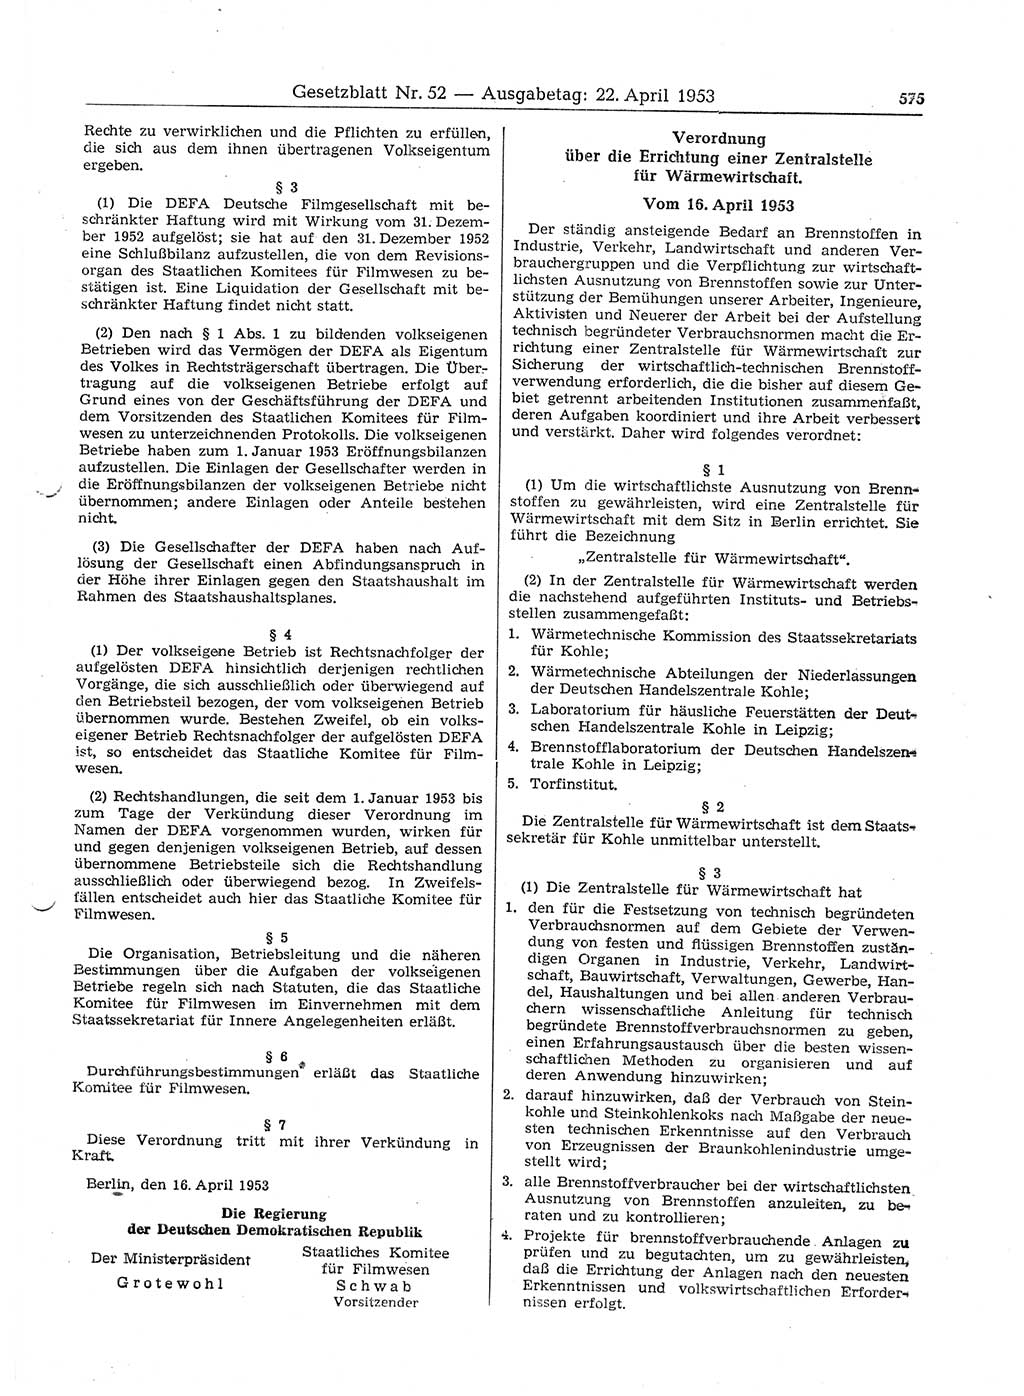 Gesetzblatt (GBl.) der Deutschen Demokratischen Republik (DDR) 1953, Seite 575 (GBl. DDR 1953, S. 575)